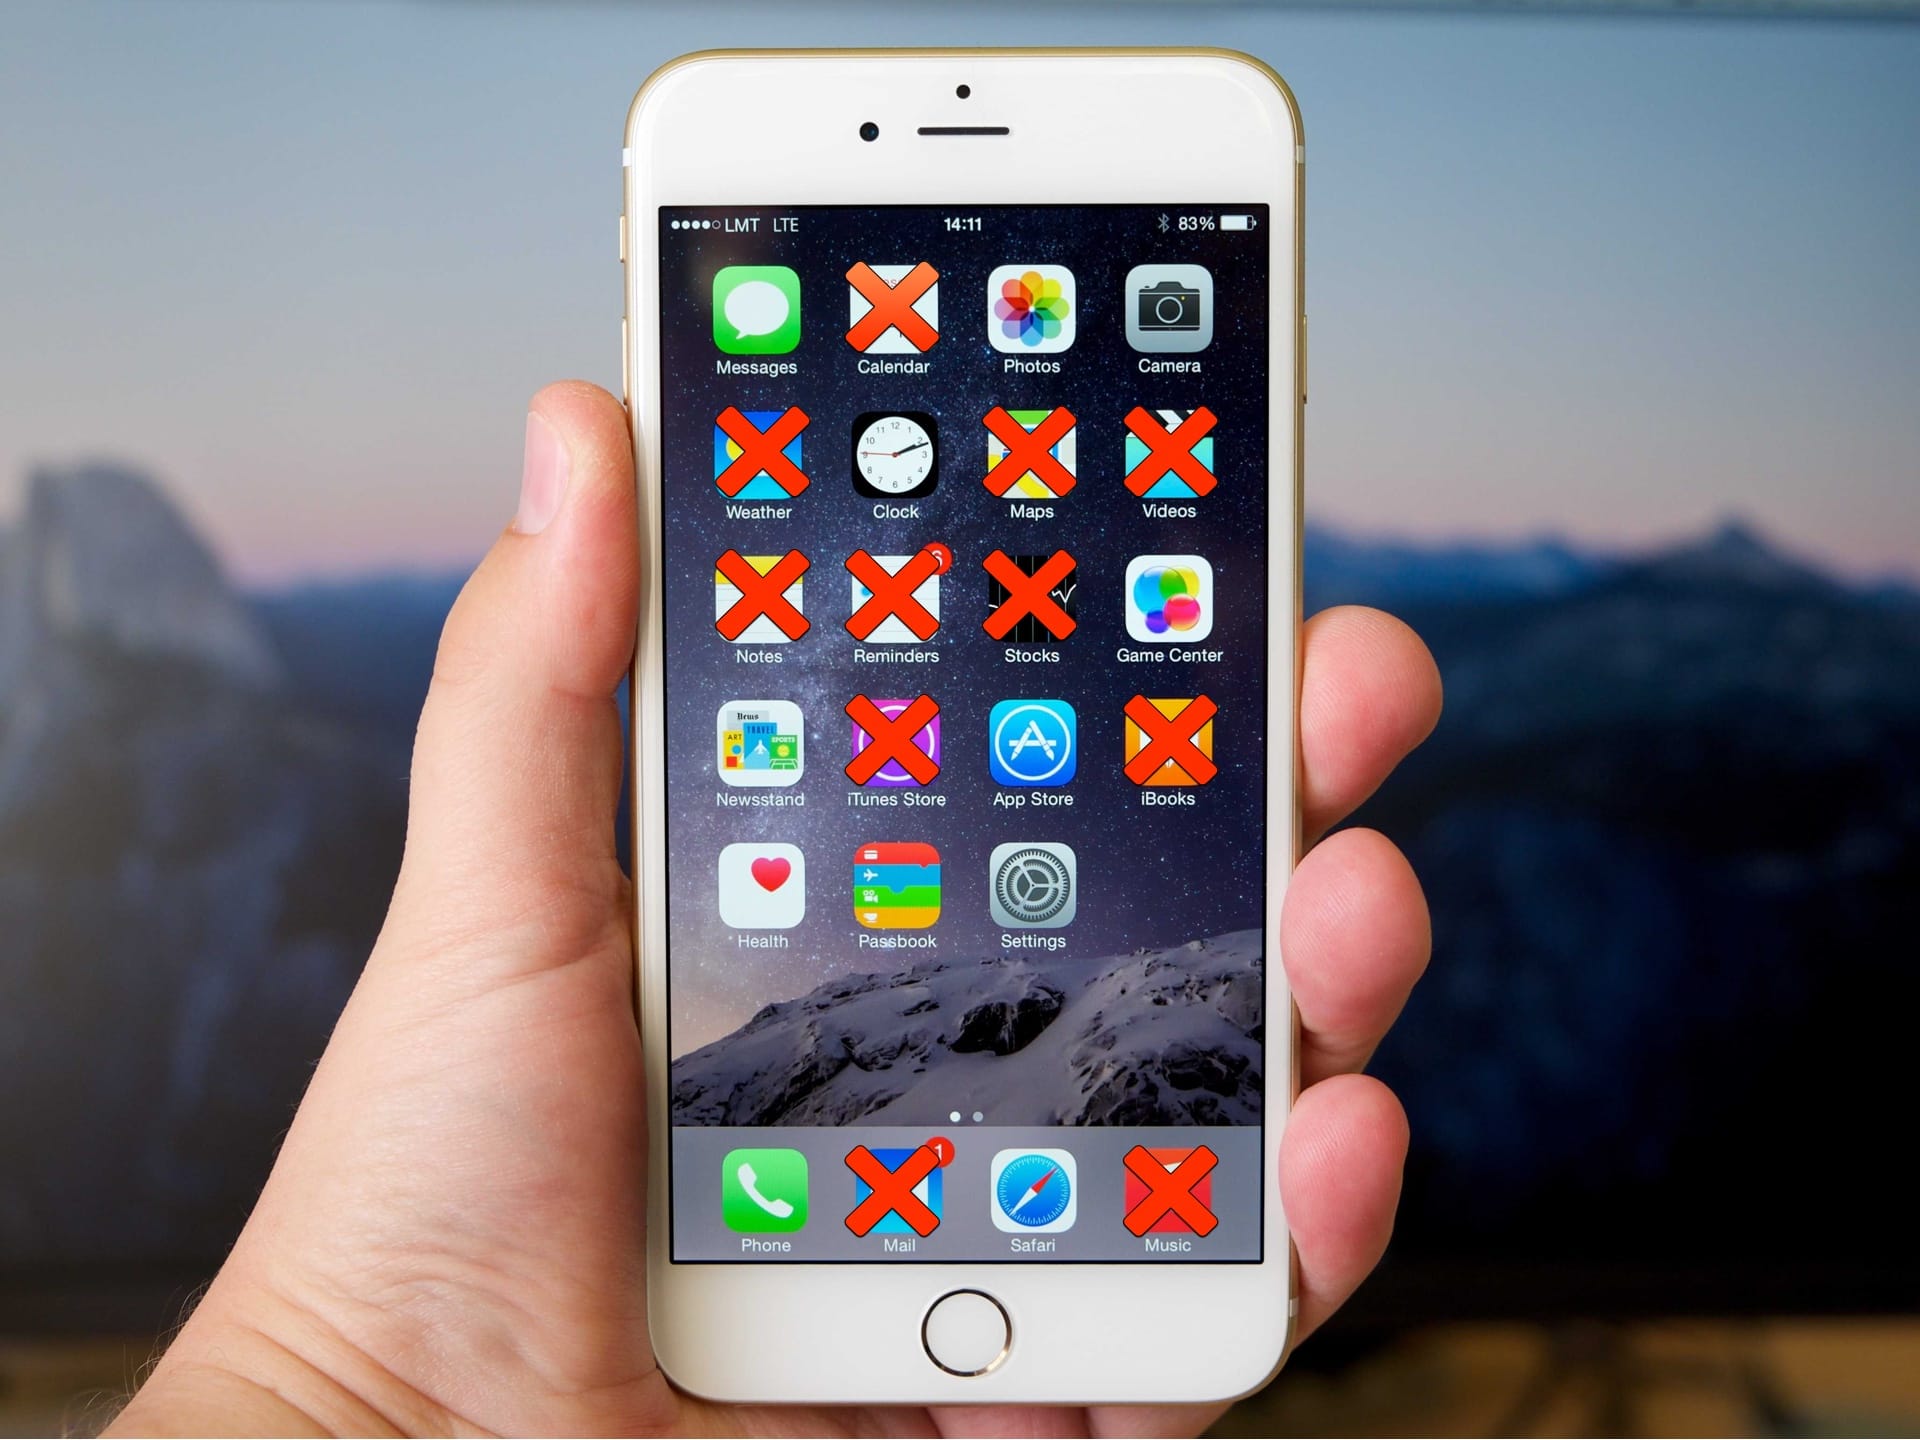 ว๊อด! iOS 10 ลบแอปมาพร้อมเครื่องได้ แต่ไม่ได้ลบจริงๆ